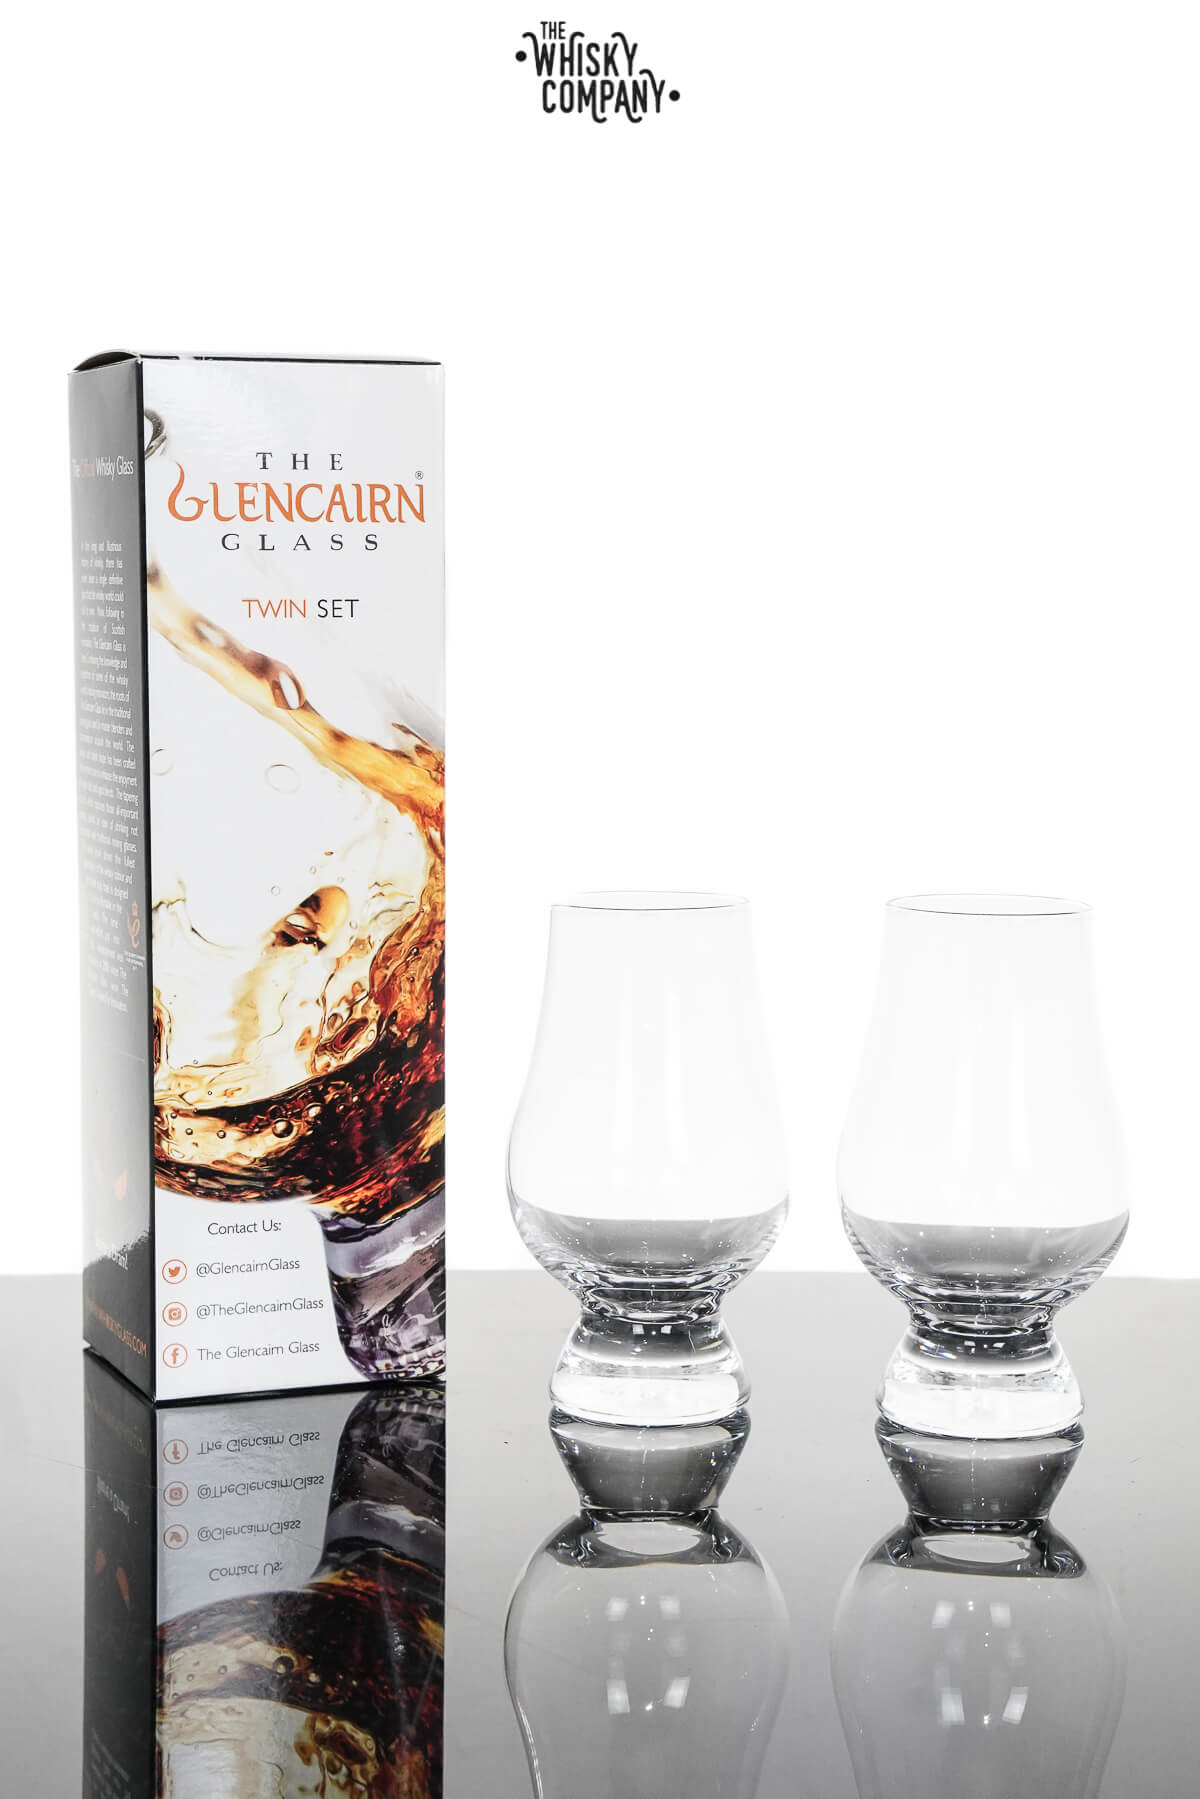 Glencairn Crystal Blenders Malt Nosing Glass